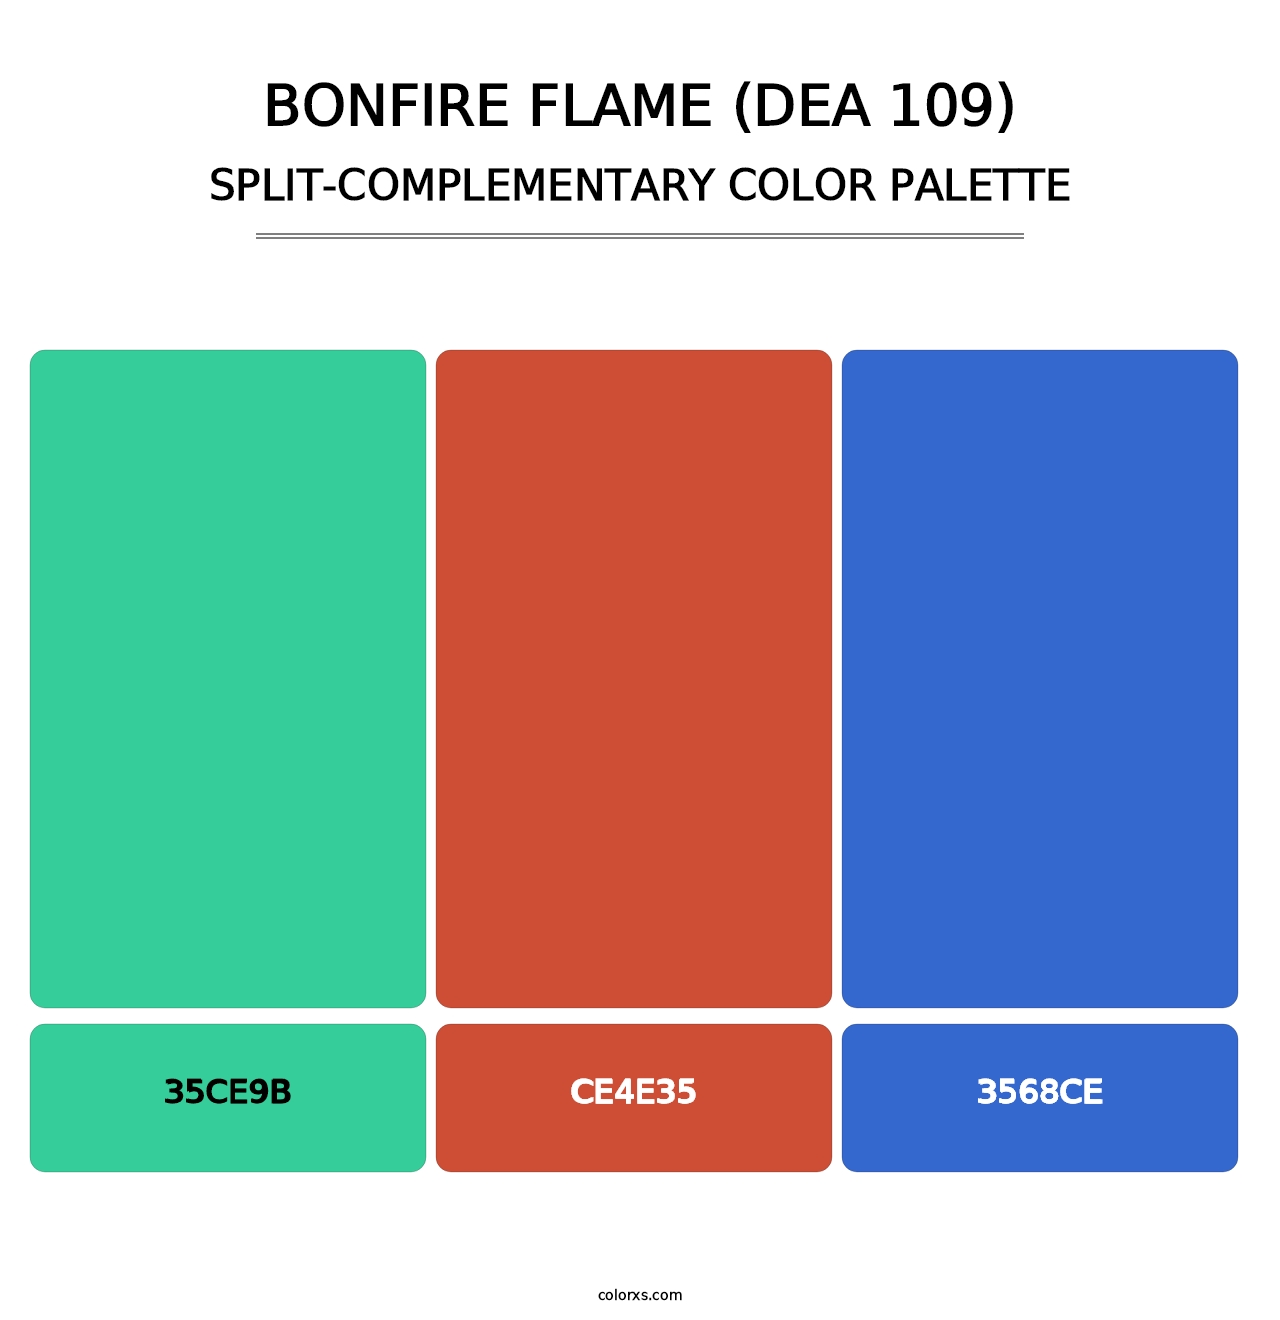 Bonfire Flame (DEA 109) - Split-Complementary Color Palette